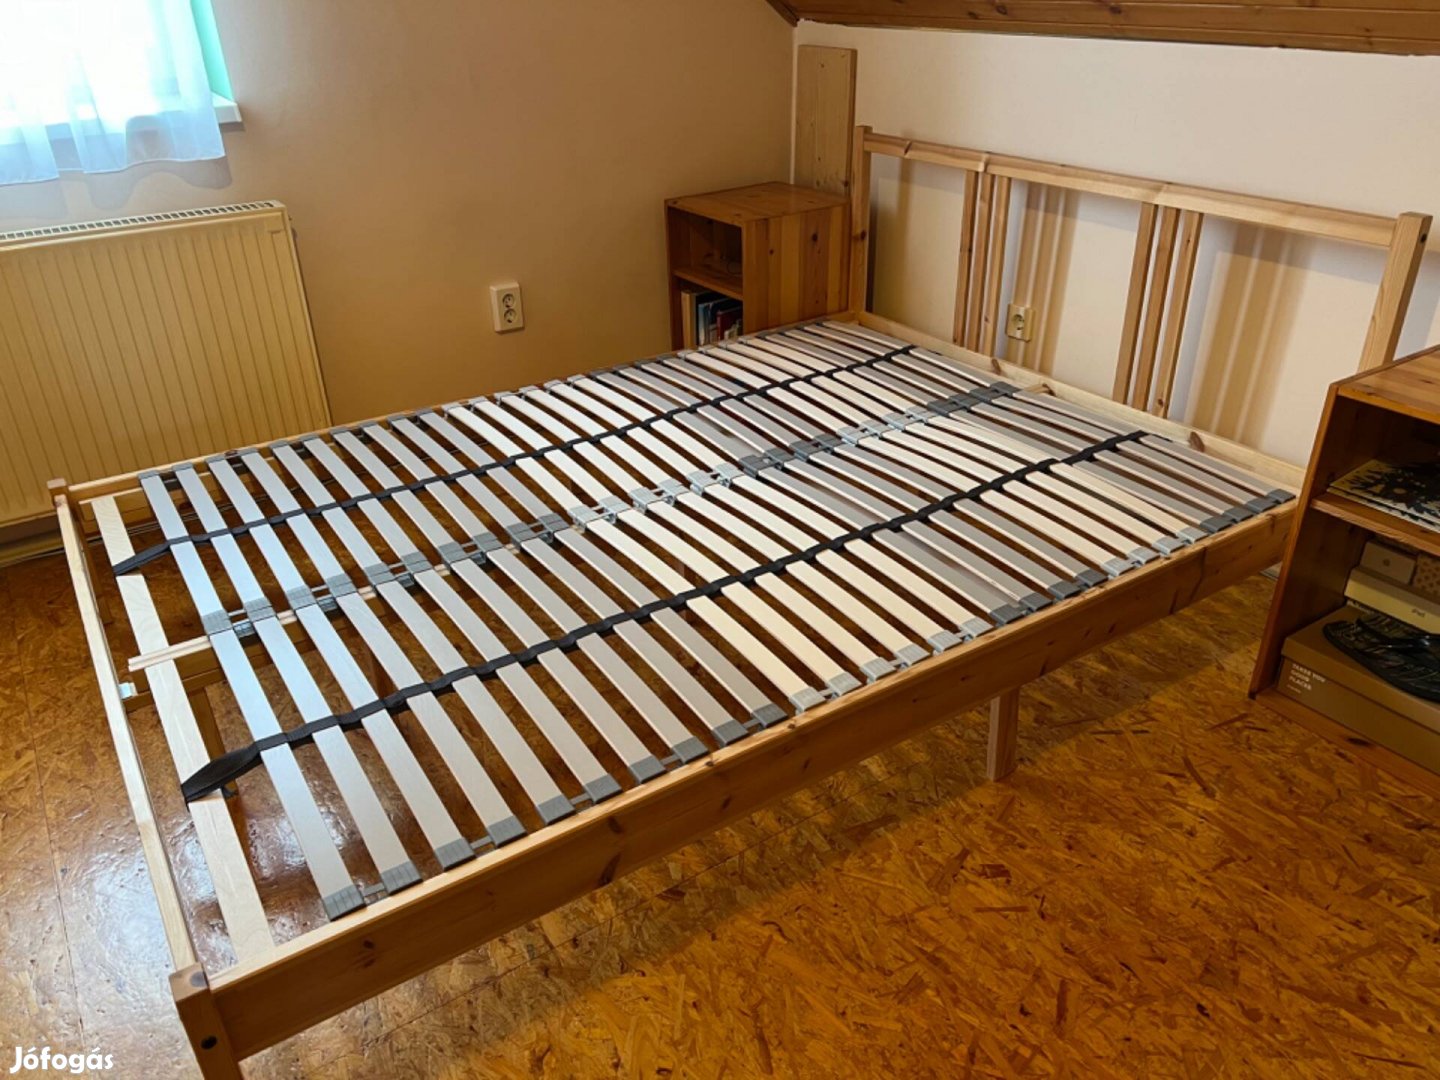 Eladó Ikeás ágy